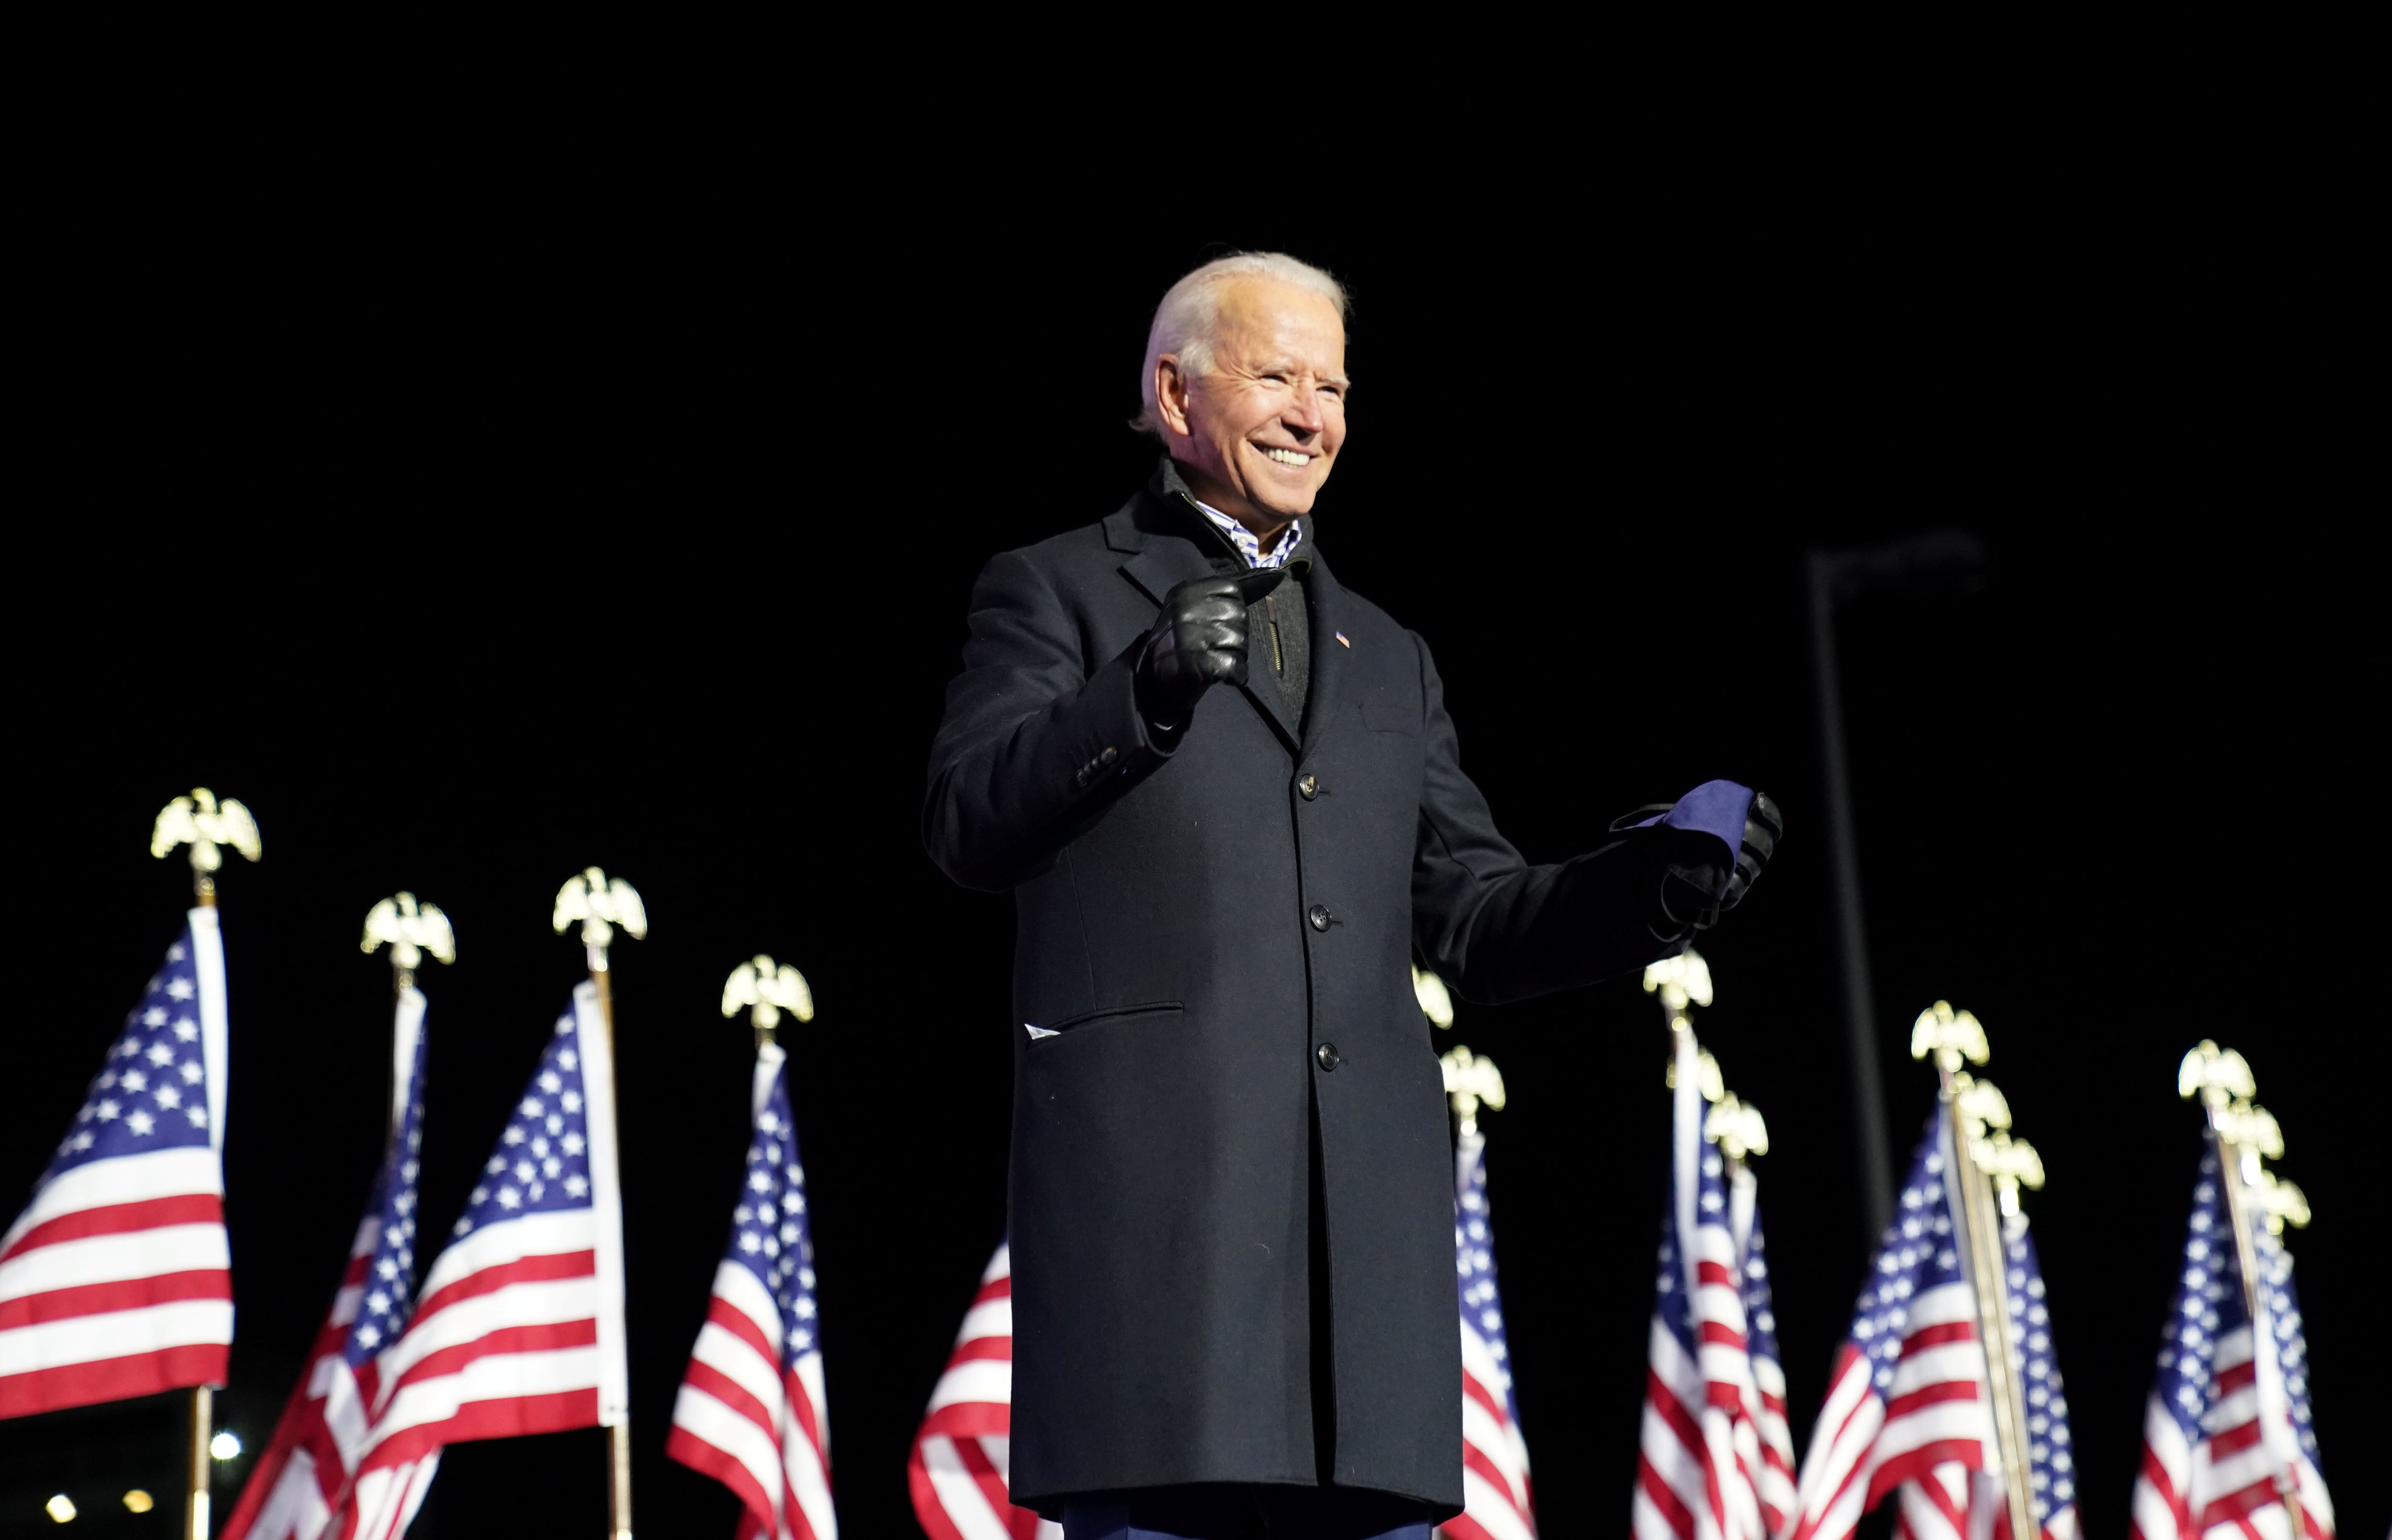 El candidato demócrata a la presidencia de Estados Unidos y ex vicepresidente Joe Biden sonríe durante un mitin de campaña en el Heinz Field en Pittsburgh, Pensilvania. REUTERS/Kevin Lamarque